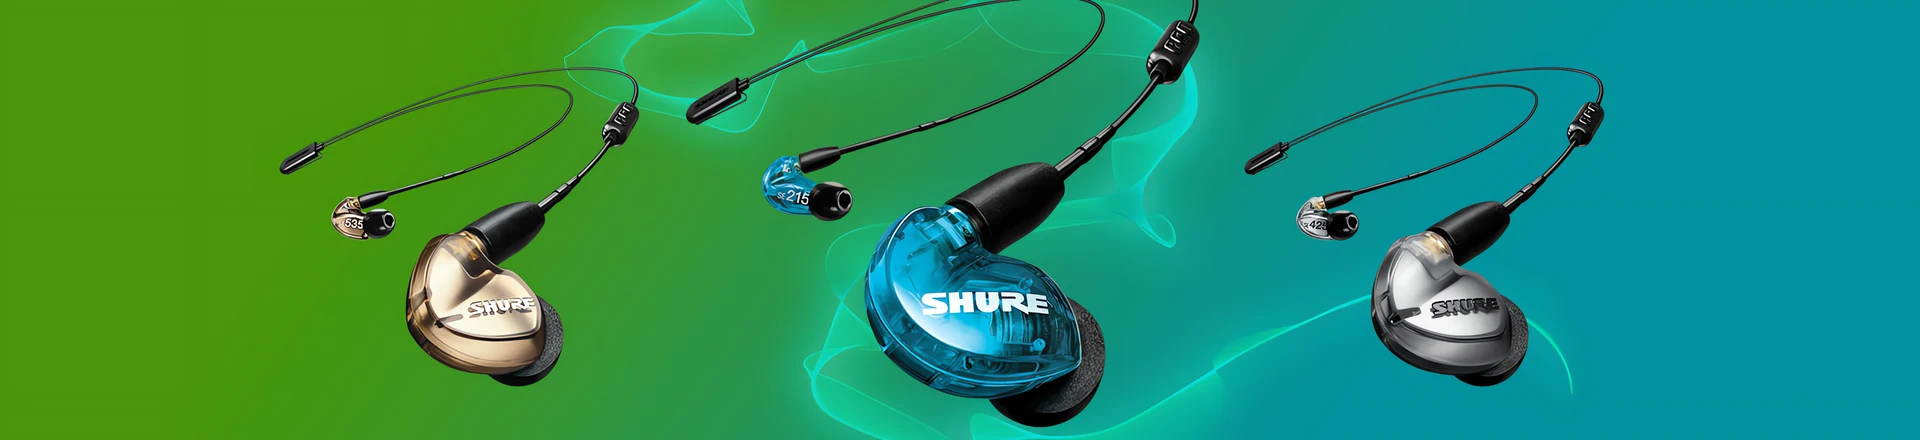 Shure odświeza linię słuchawek Bluetooth SE Sound Isolating